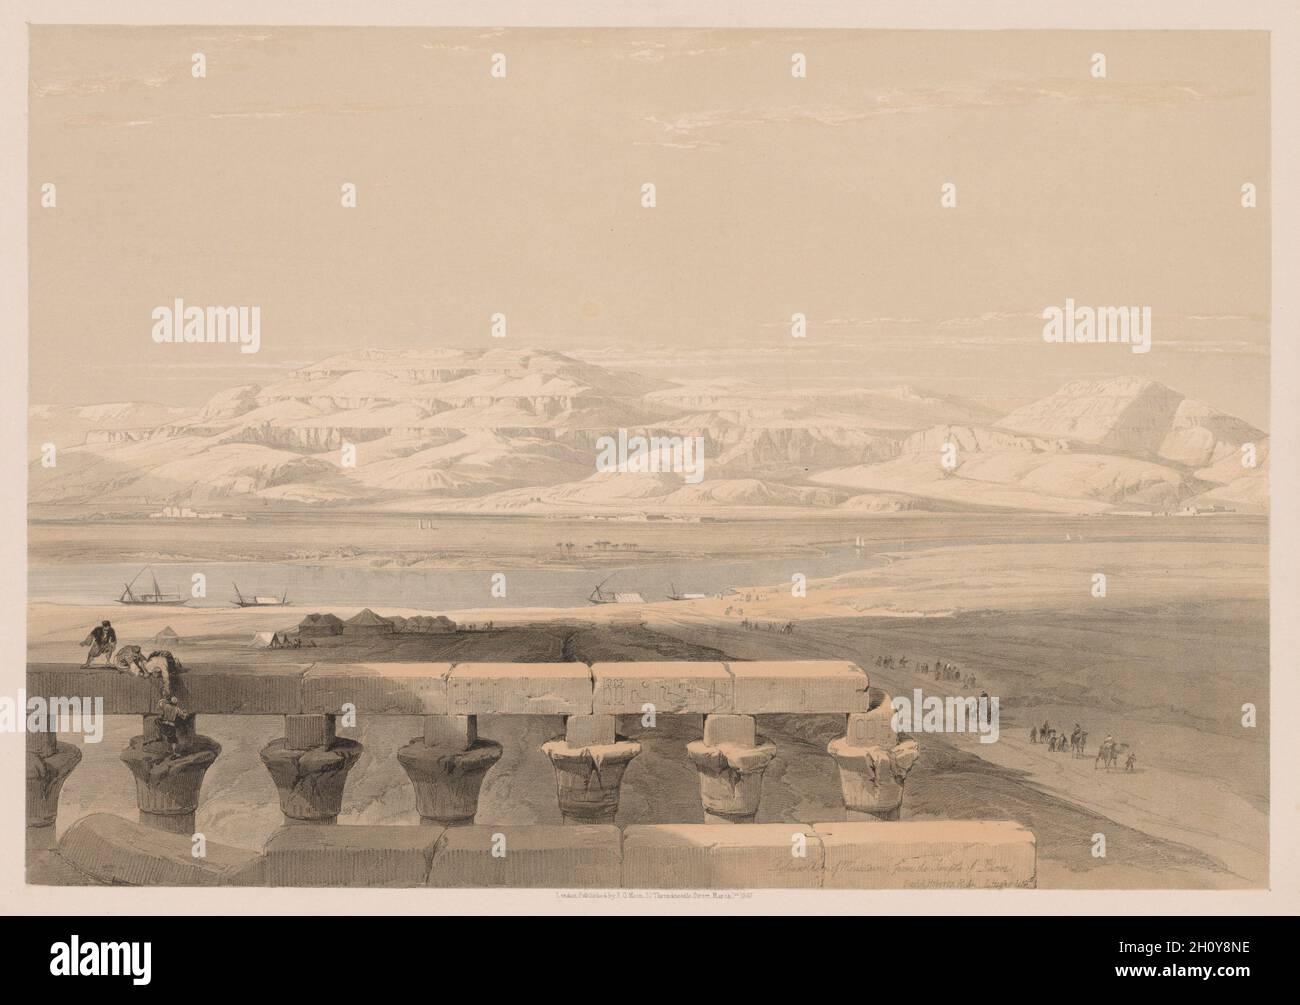 Ägypten und Nubien: Band I - Nr. 30, Lybische Bergkette aus dem Luxor-Tempel, 1838. Louis Haghe (Großbritannien, 1806-1885). Farblithographie; Stockfoto